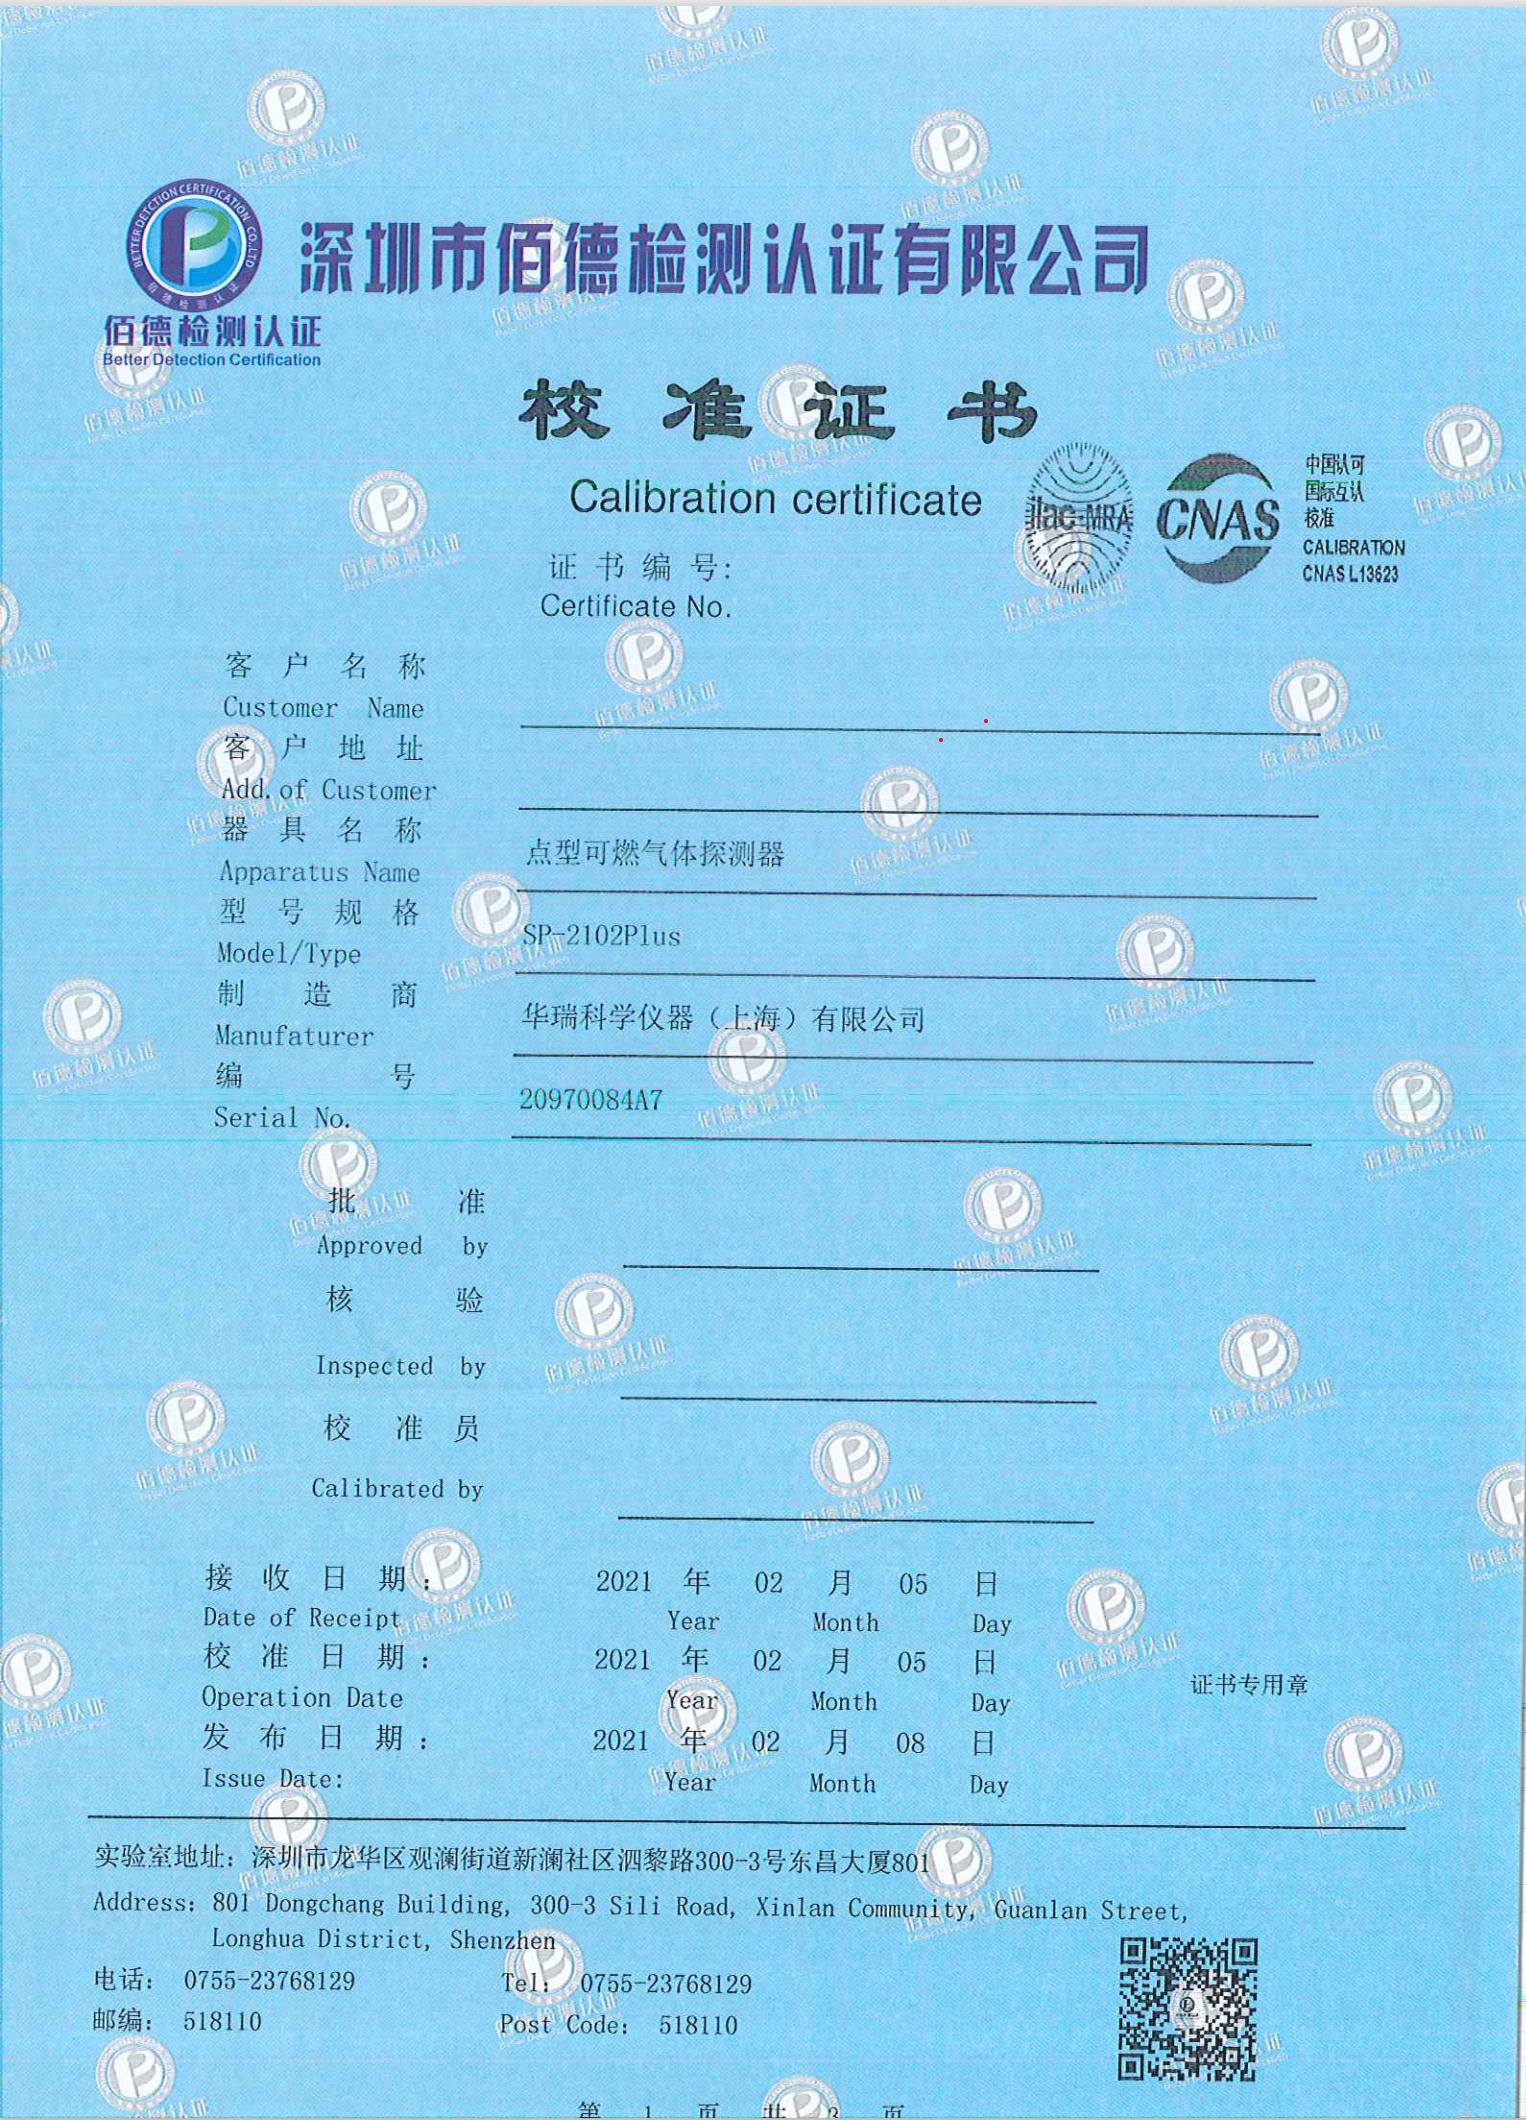 硫化氢气体检测仪校验计量校准标定广东深圳佰德检测公正准确